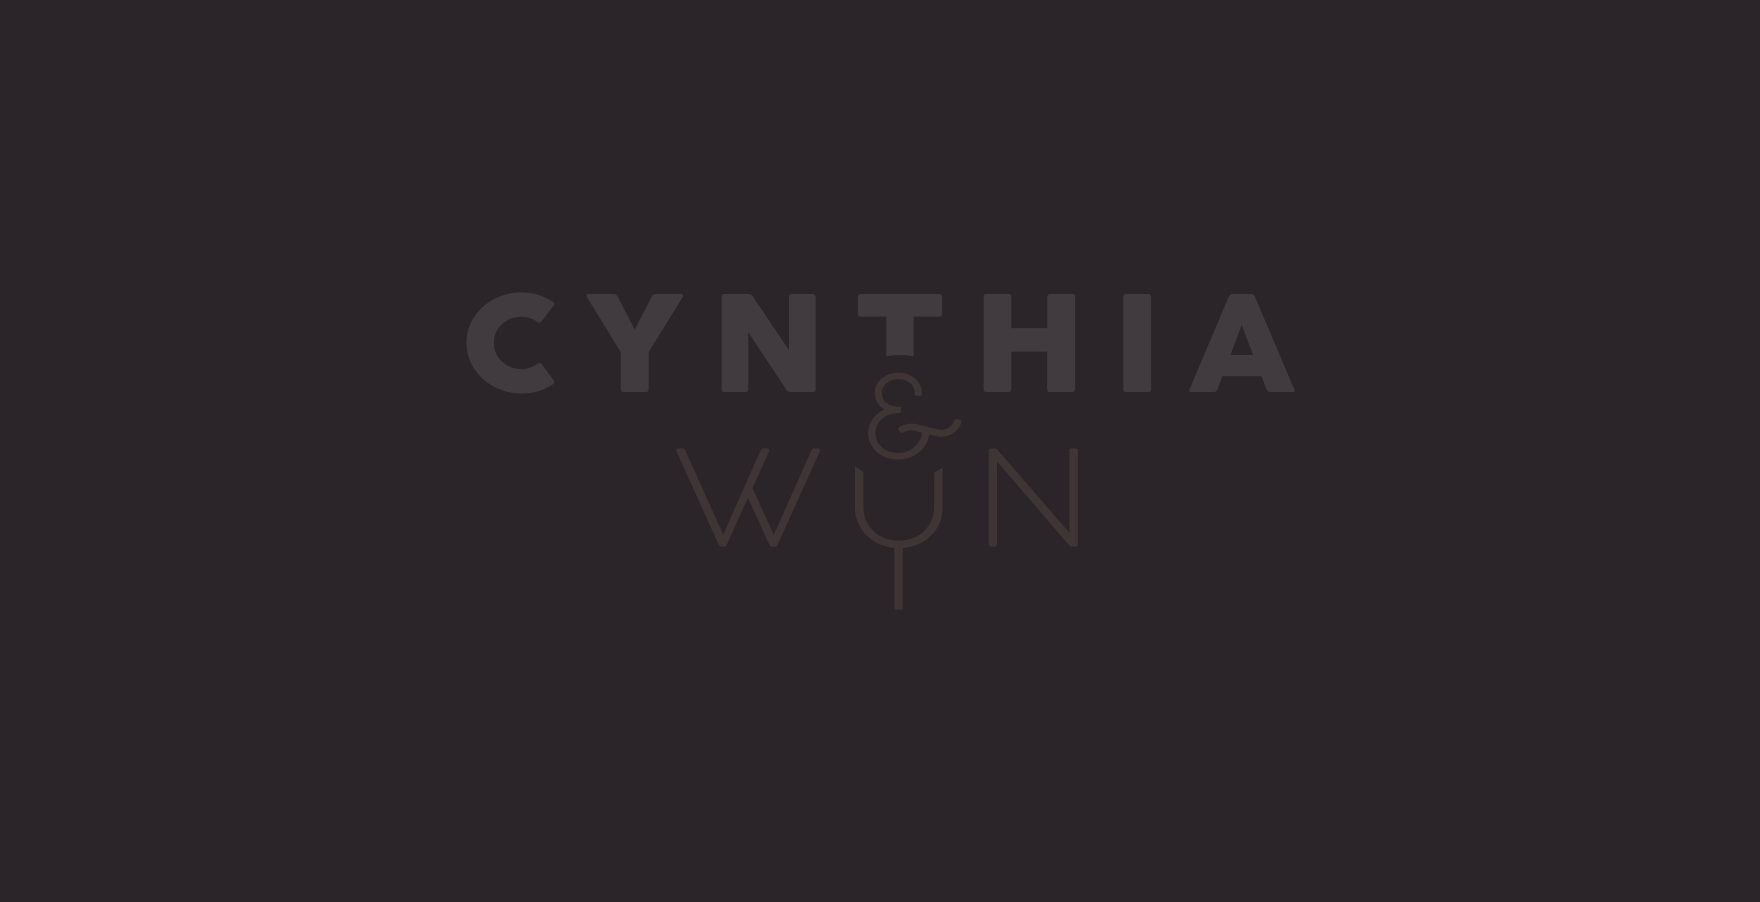 Hoi! Ik ben Cynthia en ik hou van wijn